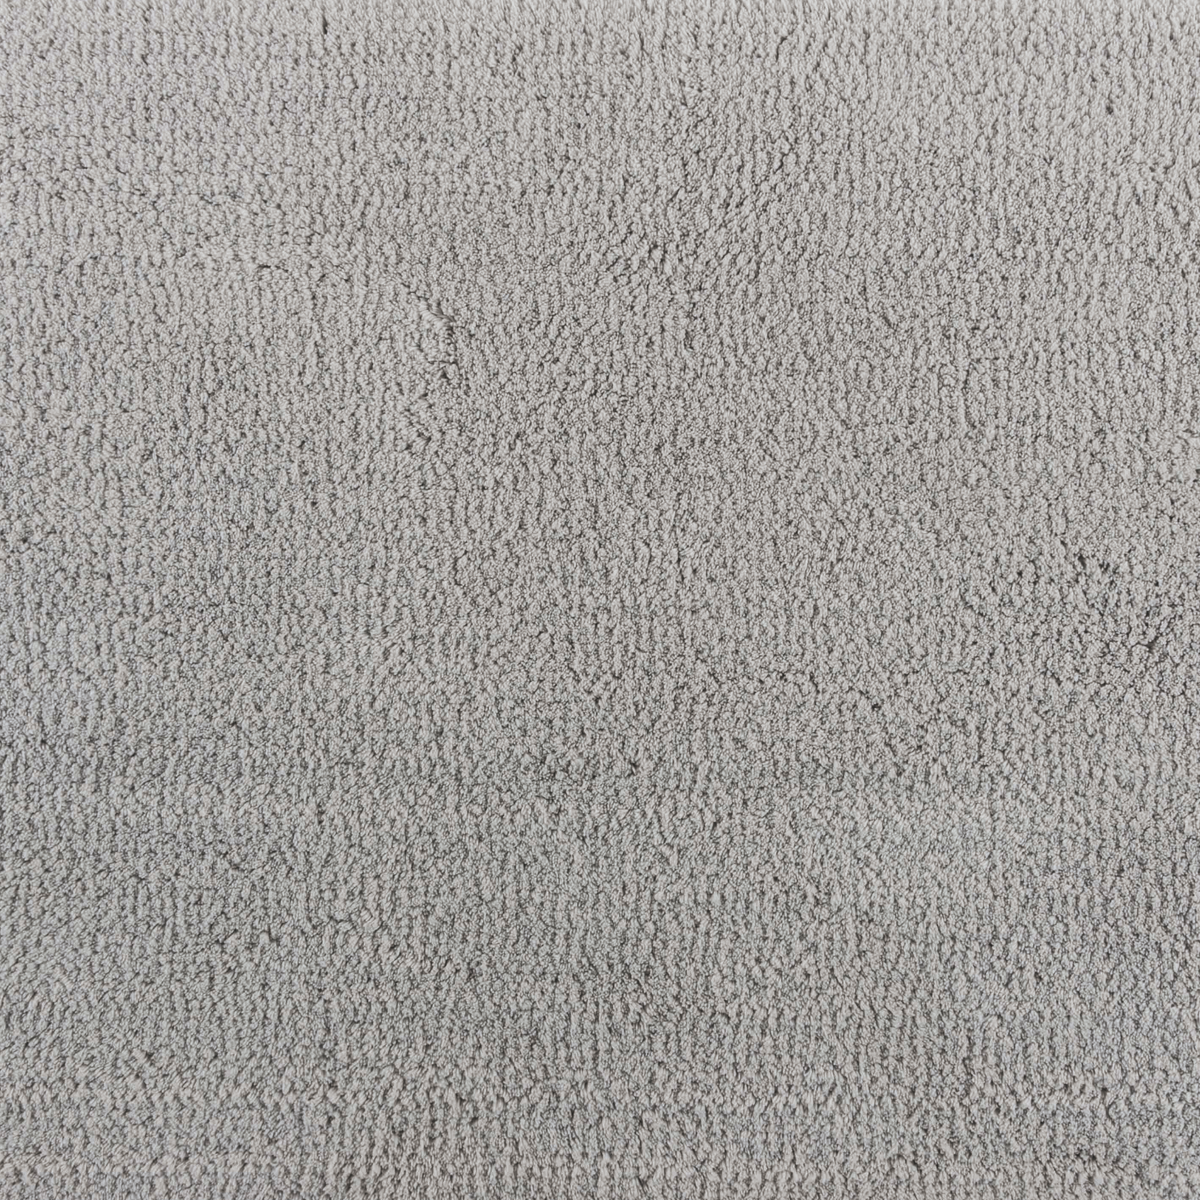 Fabric Closeup of Graccioza Cool Bath Rugs Silver Color